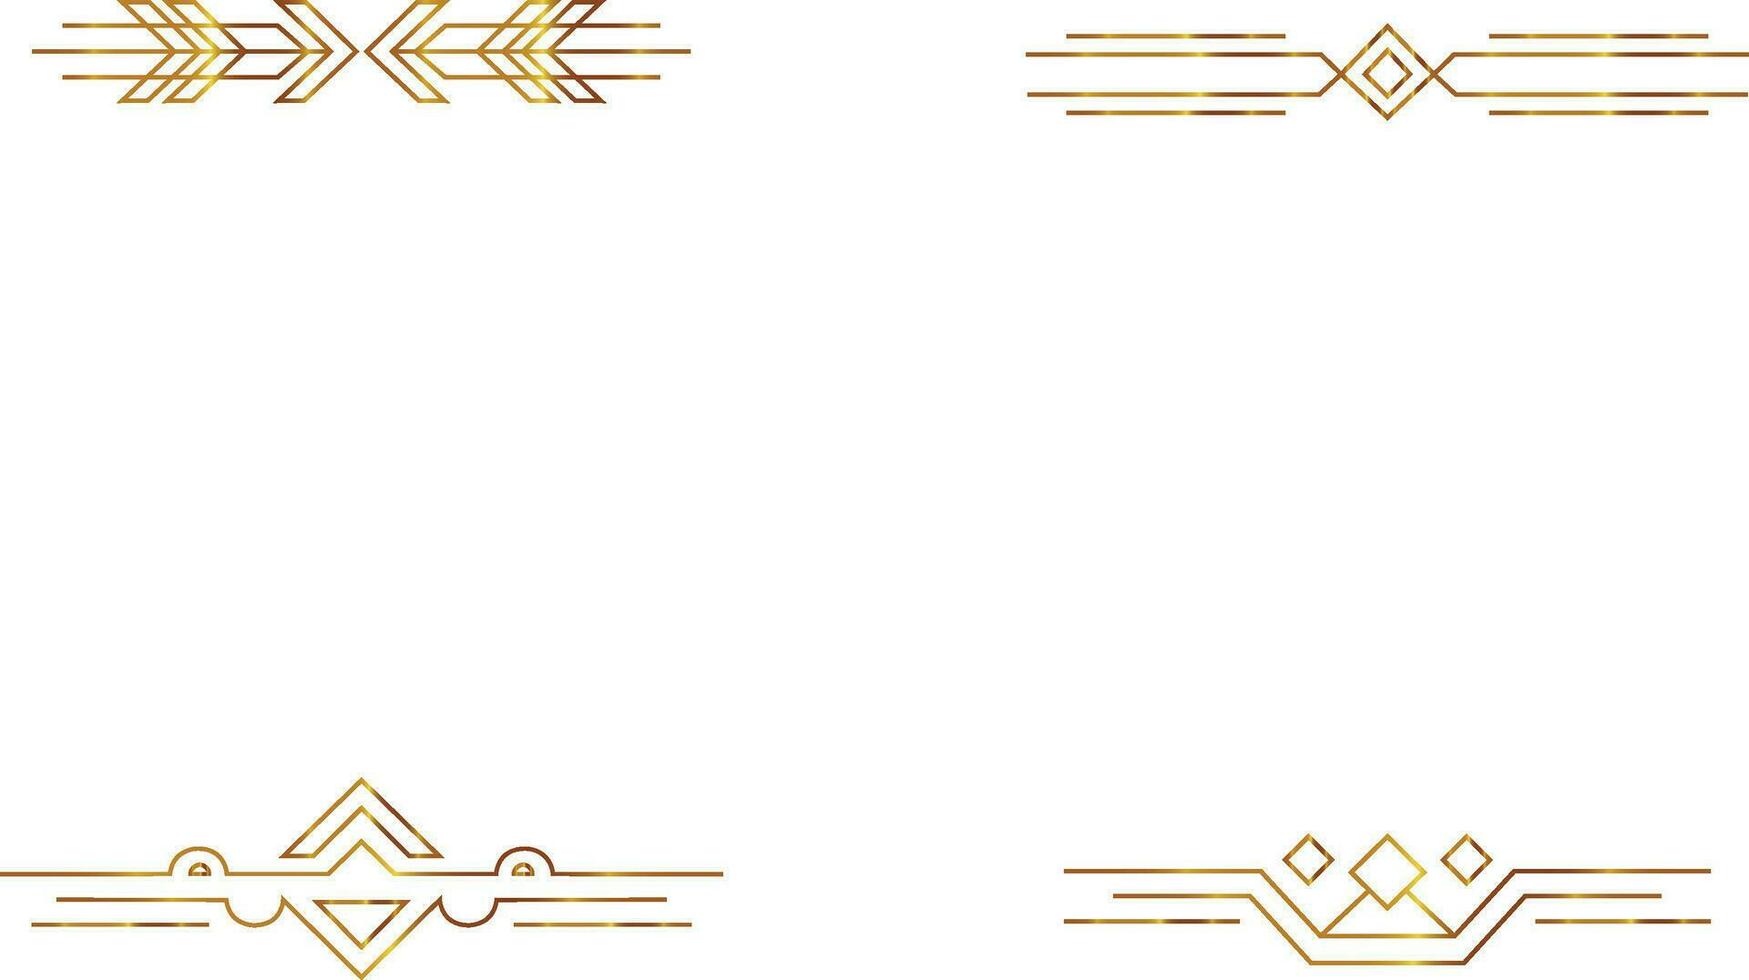 Golden Divider. Vintage header and border template for design decoration wedding,invitation,celebration.Vector Pro vector